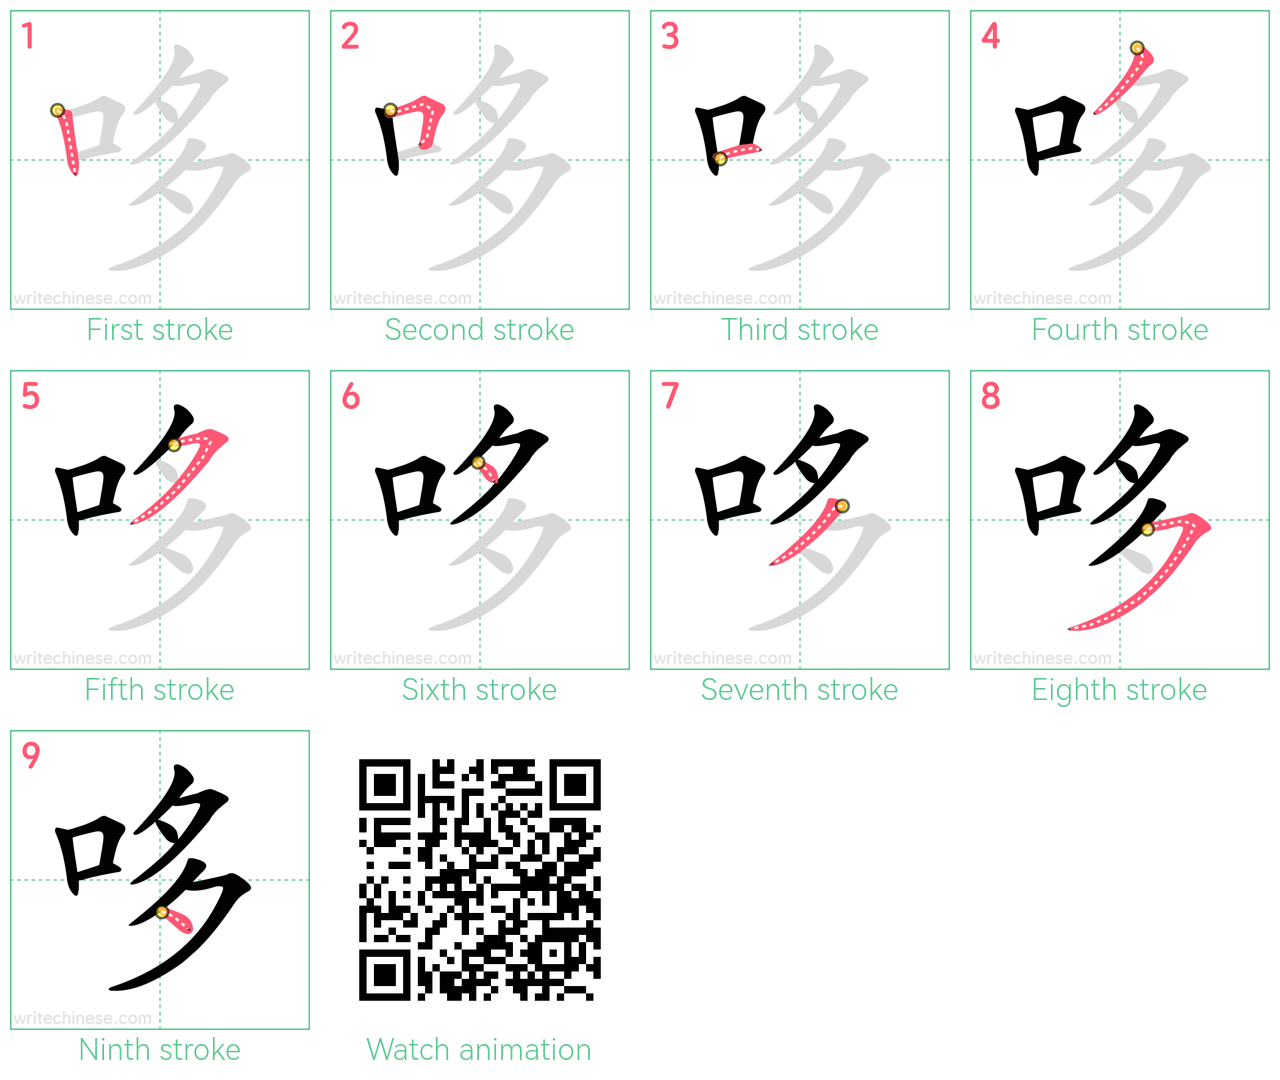 哆 step-by-step stroke order diagrams